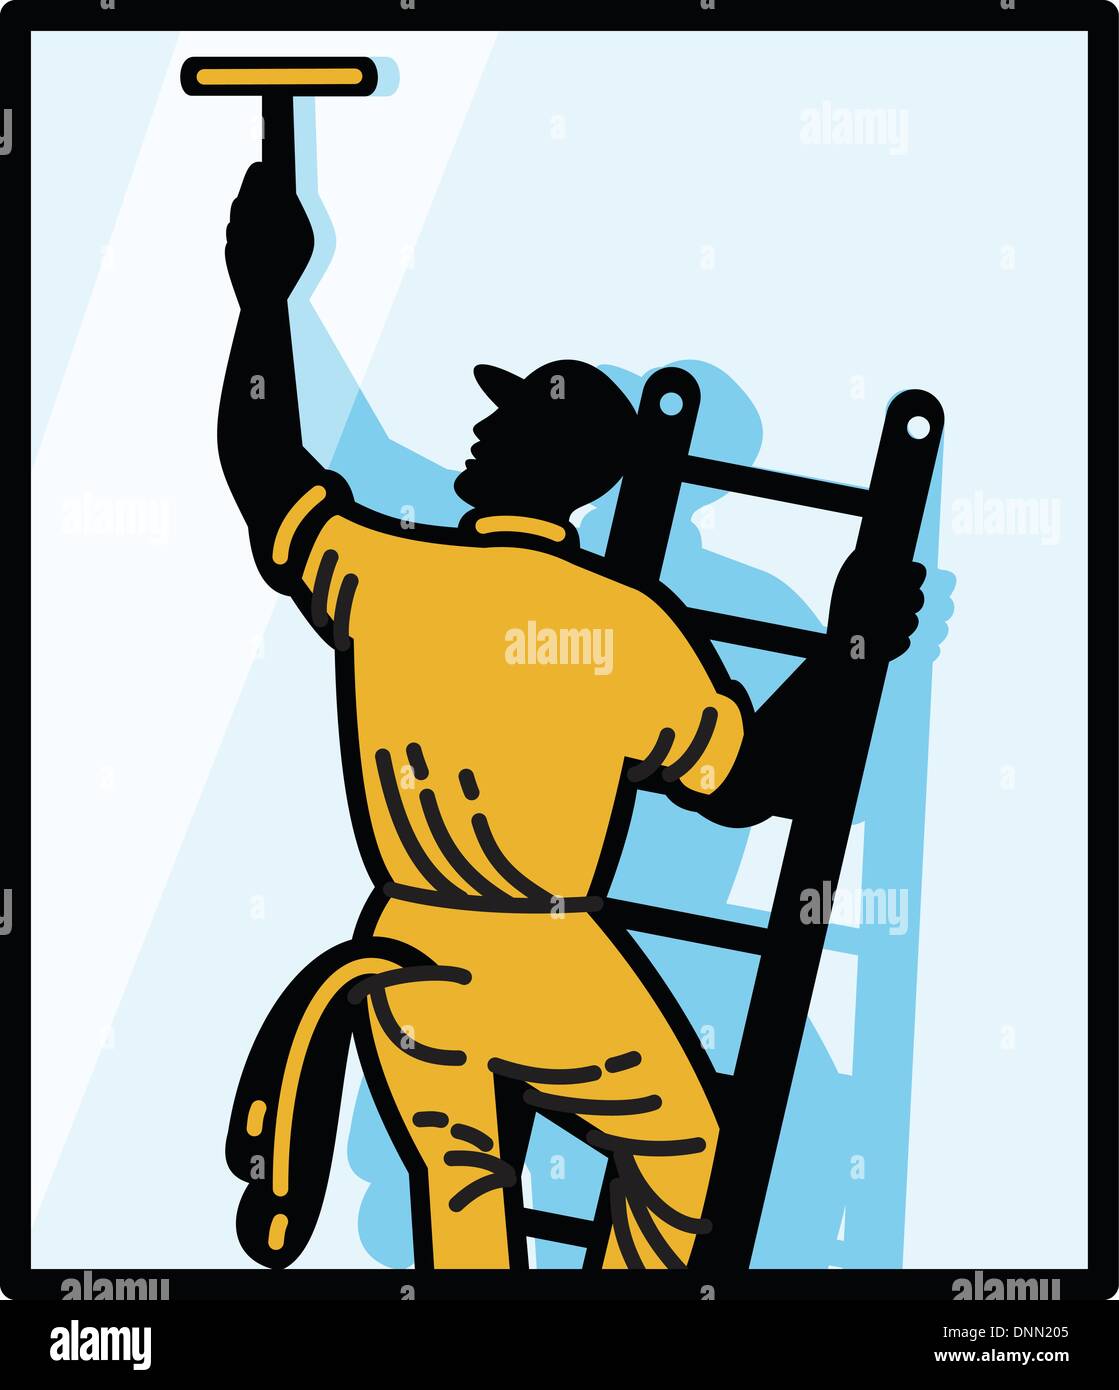 Abbildung eines Fenster Reiniger Arbeitnehmers Reinigung auf Leiter mit Rakel angesehen von hinten im Inneren Platz gemacht im retro-Stil. Stock Vektor